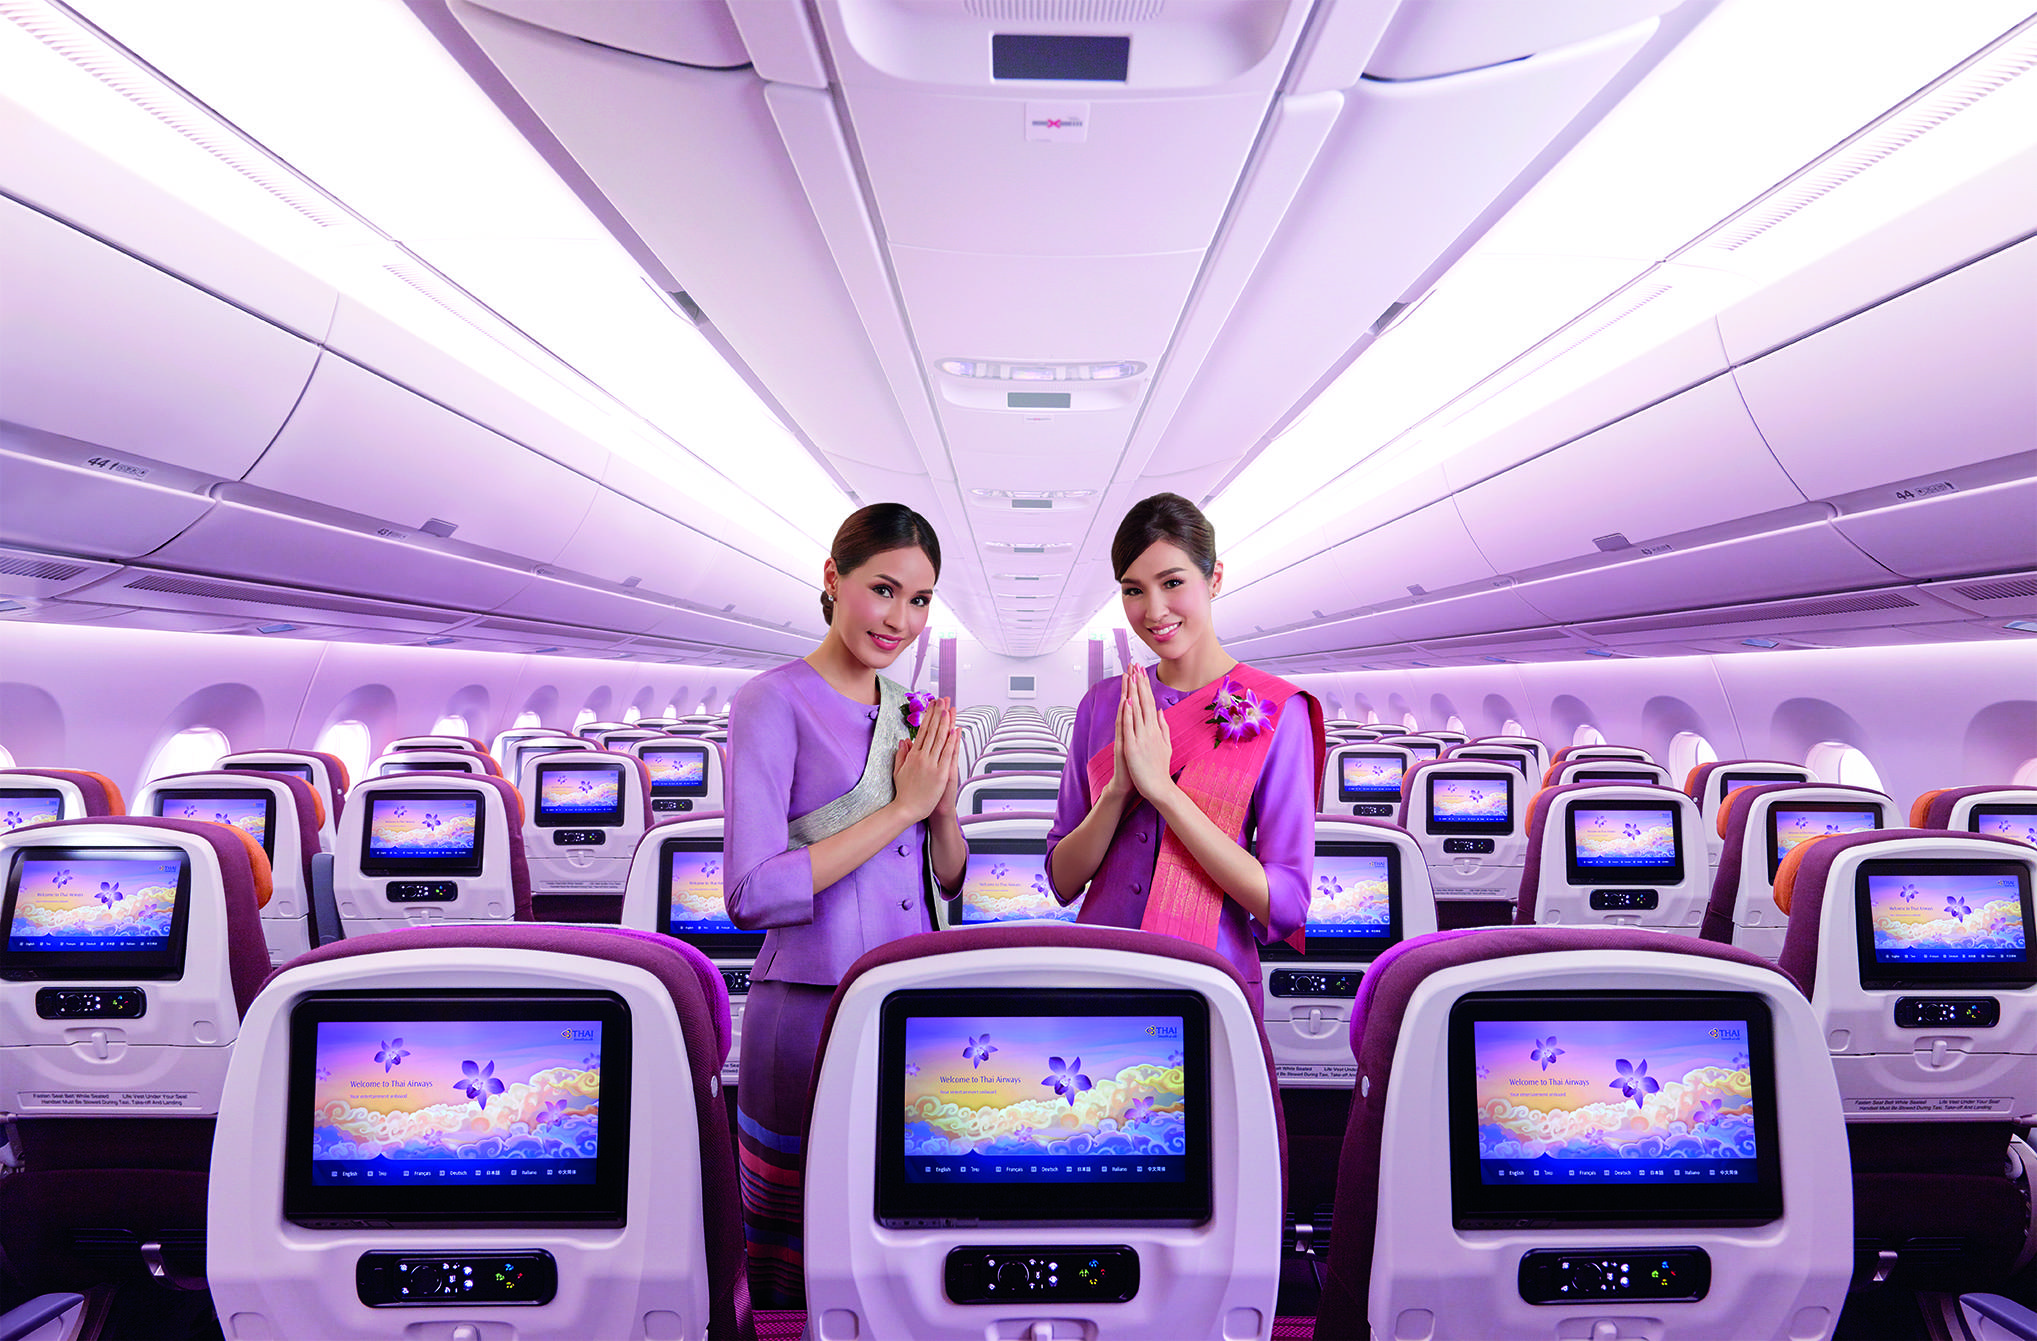 Тайские авиалинии авиакомпания - официальный сайт thai airways, контакты, авиабилеты и расписание рейсов тай эйрвейз 2022